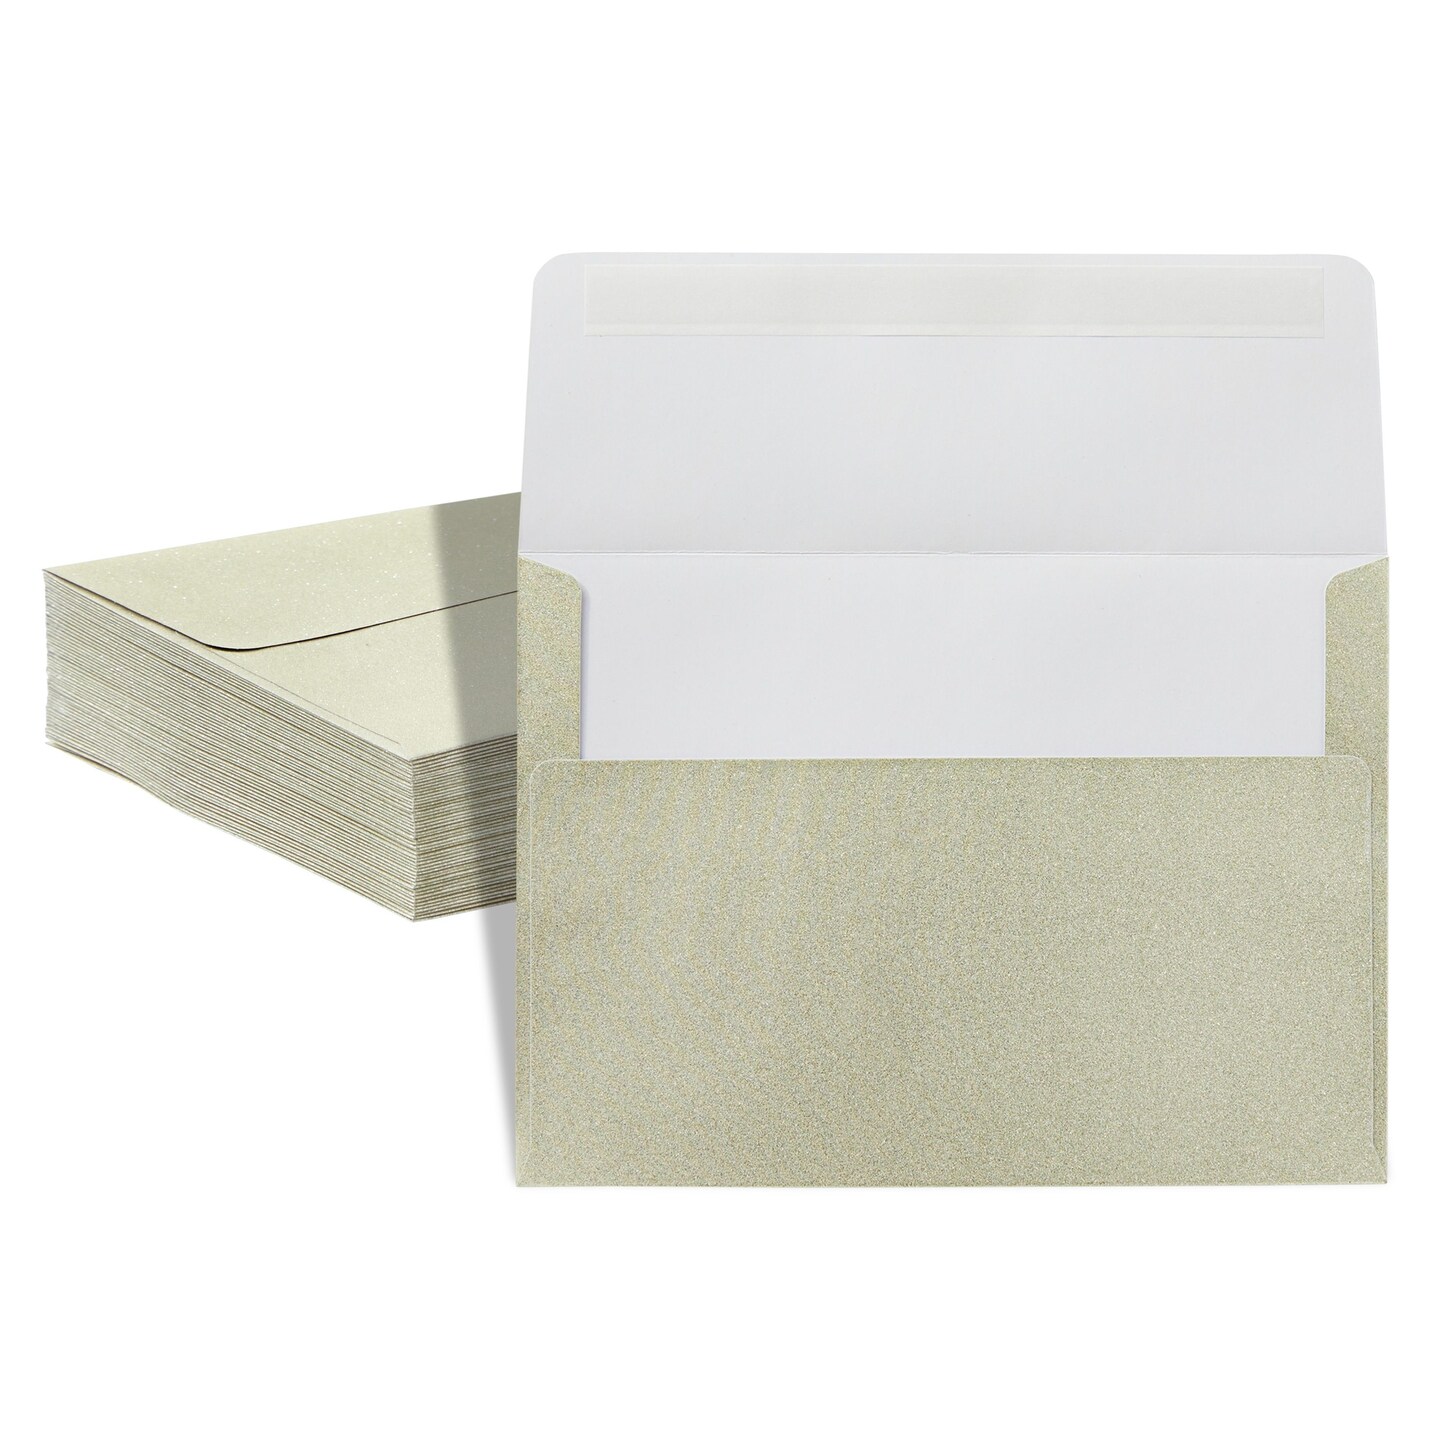 50 Packs 5x7 Envelopes, A7 Envelopes, 5x7 Envelopes for